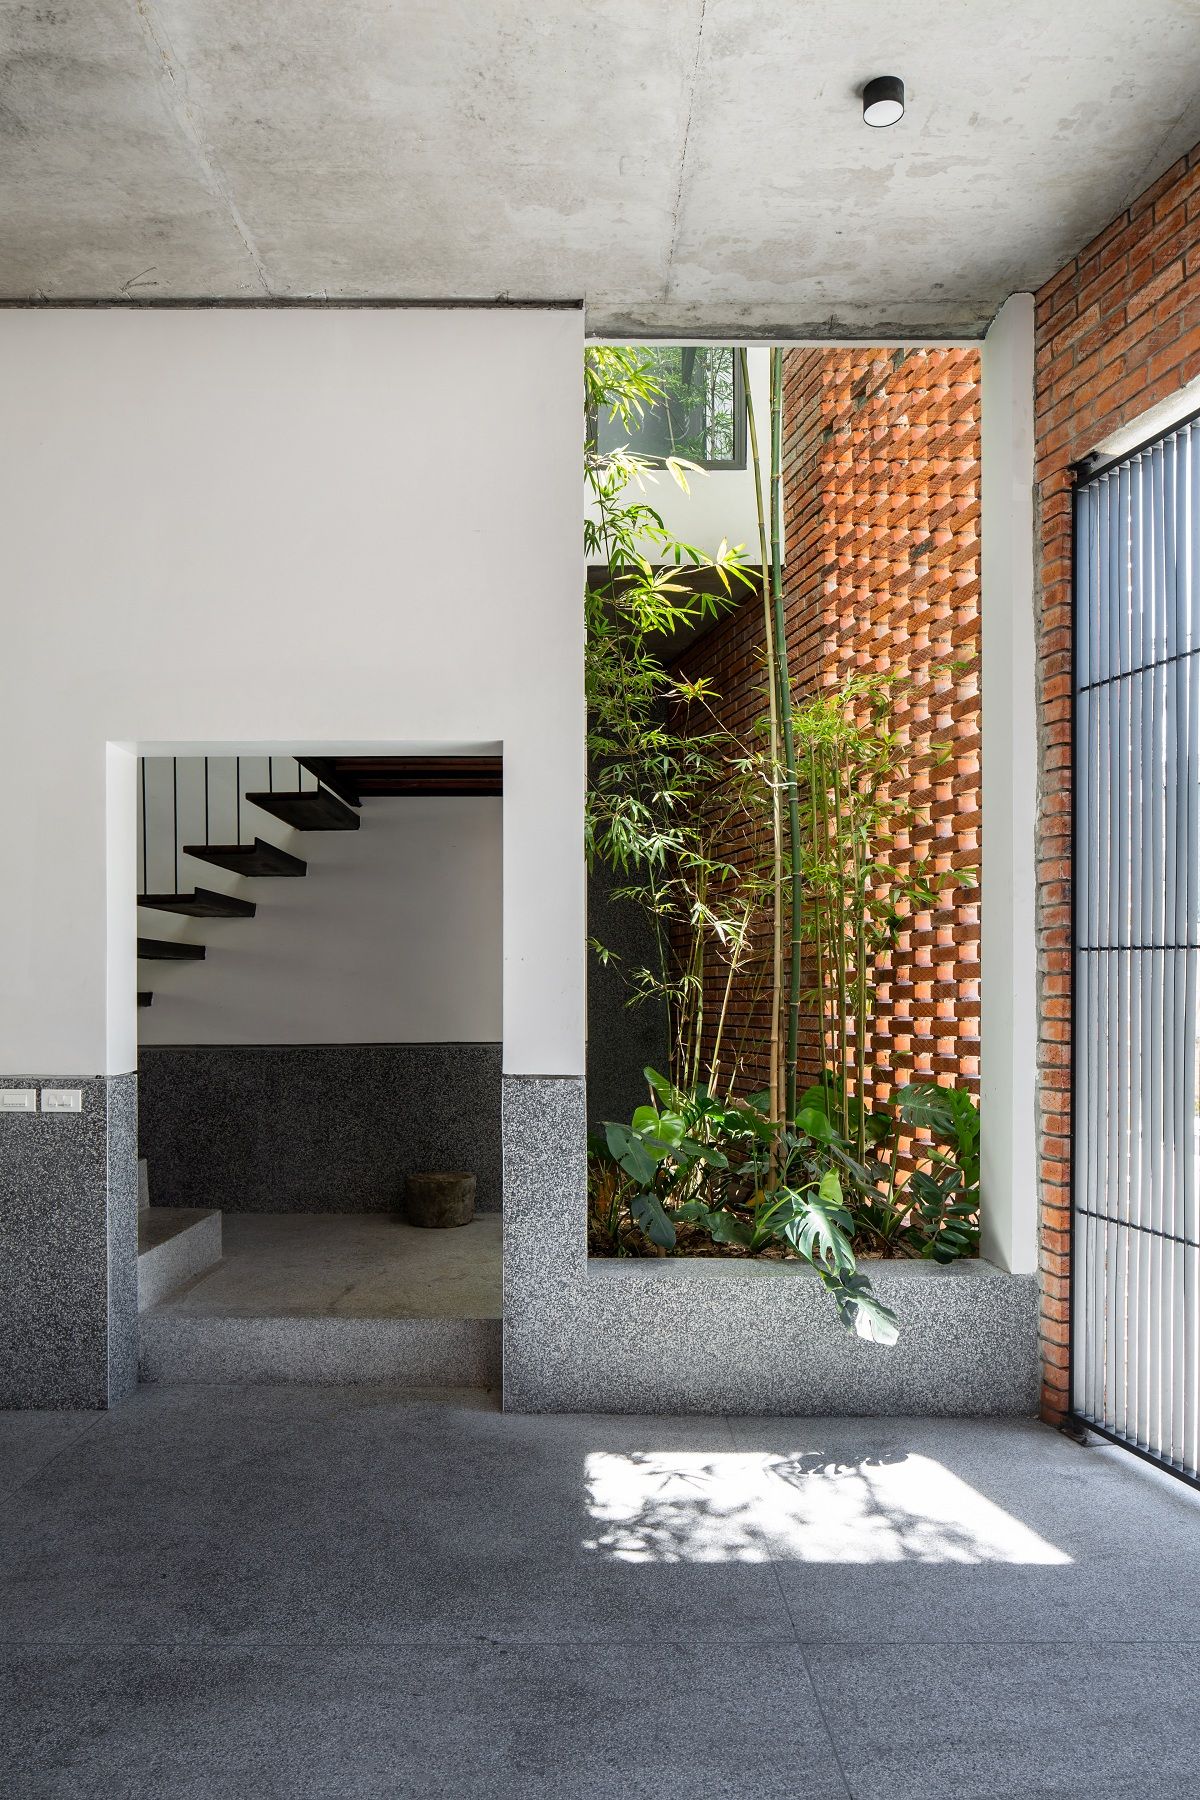 The Tiamo House  - Căn nhà “hướng nội” | DOM architect Studio